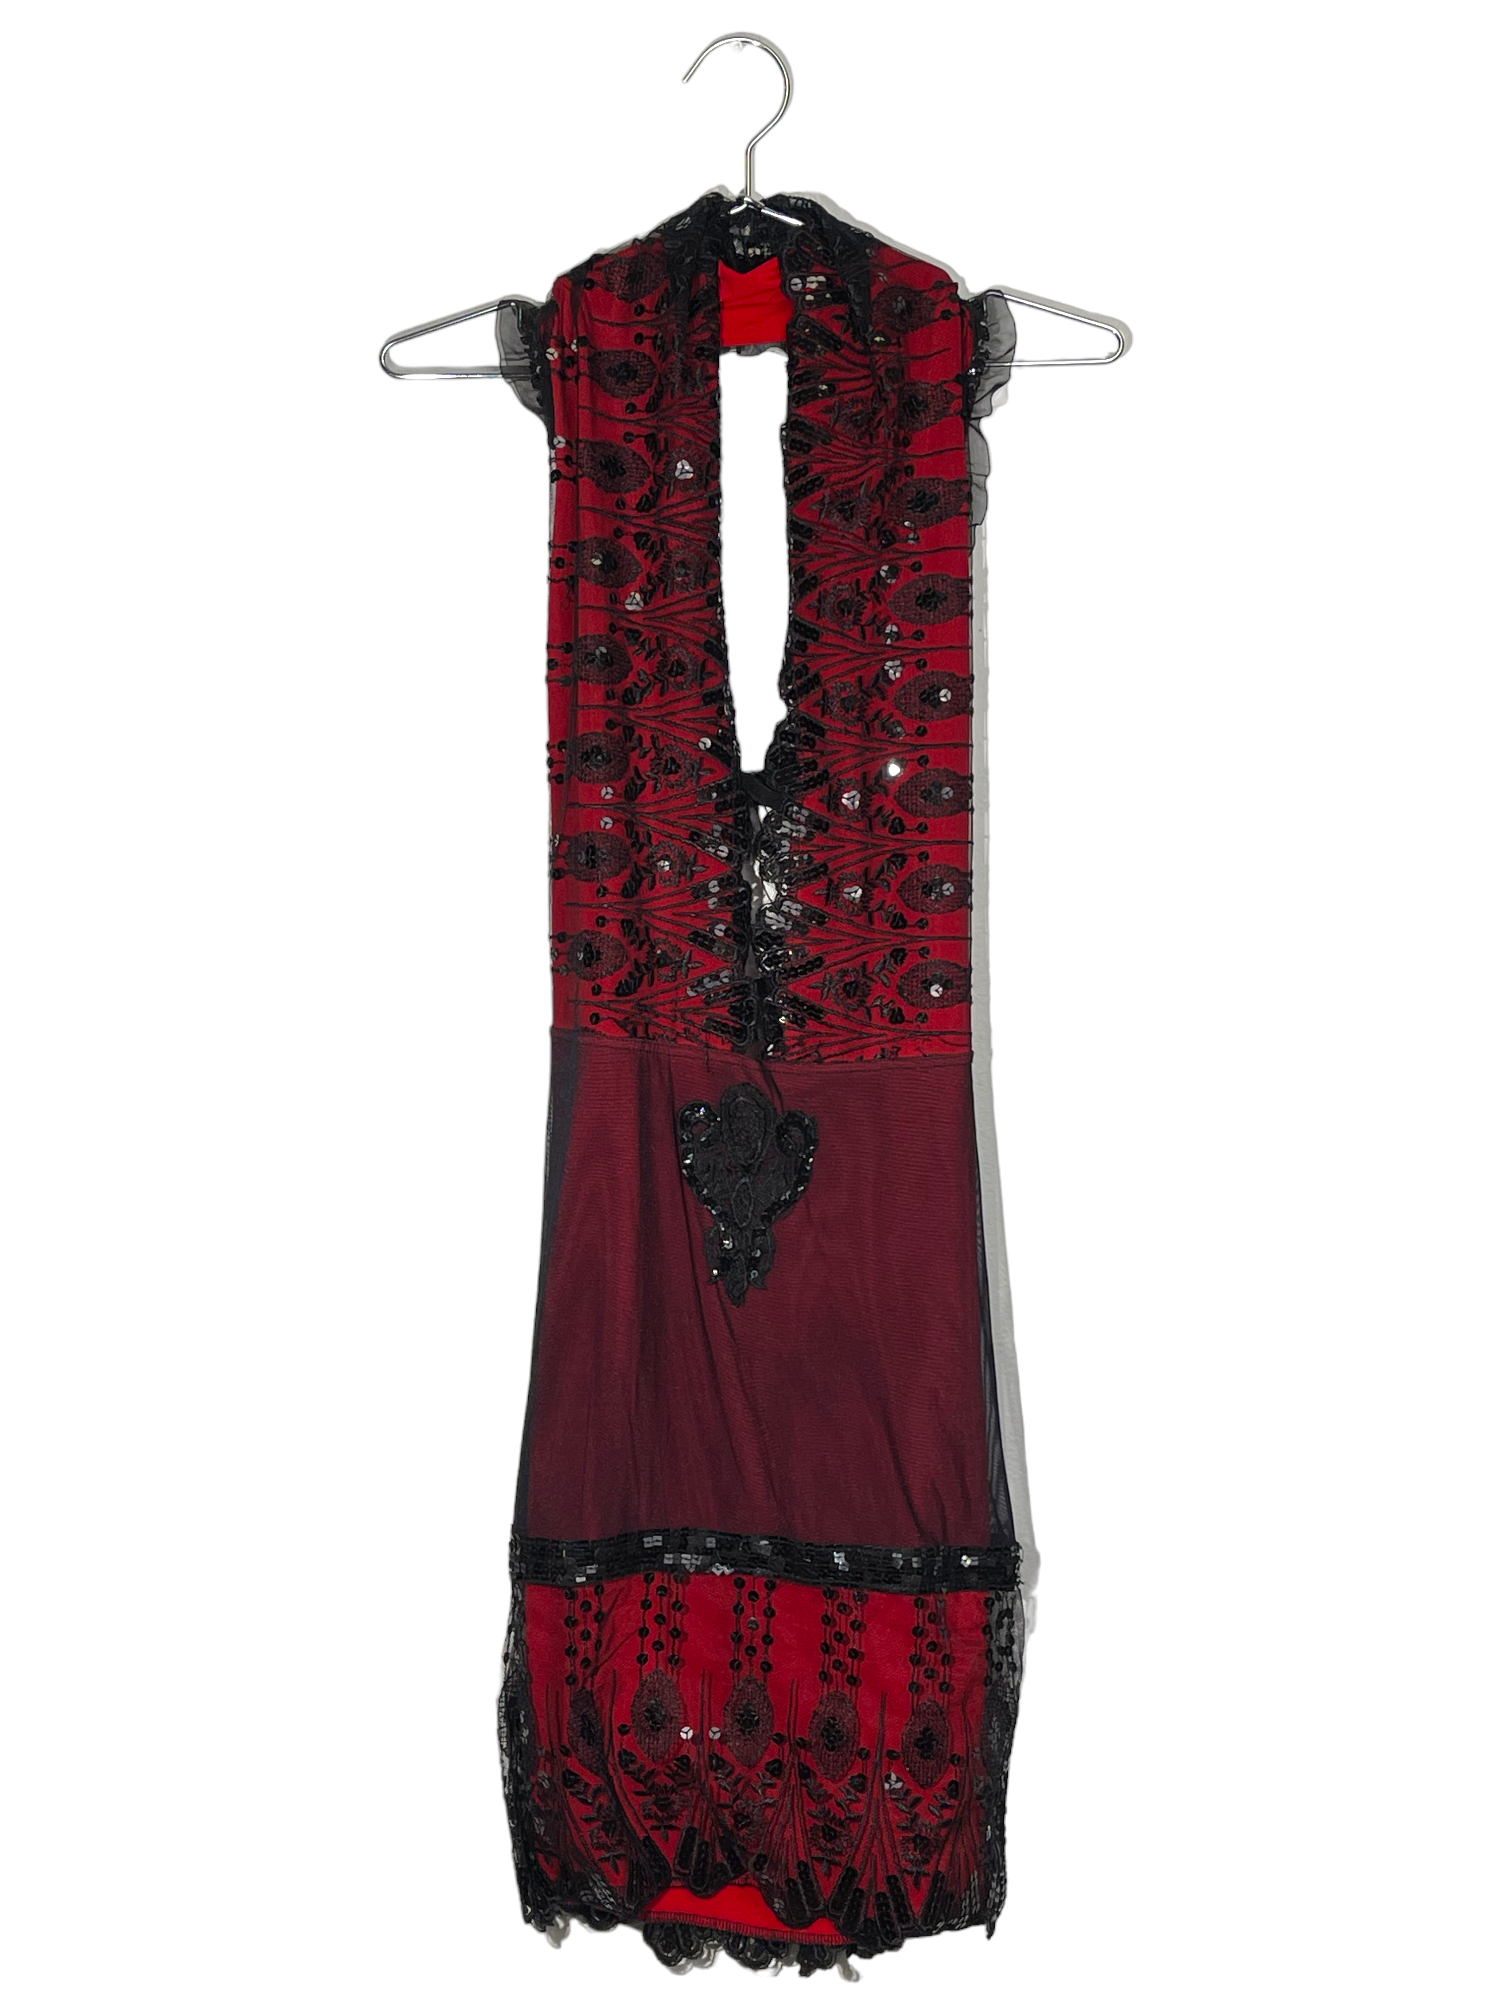 Red & Black Sequined Halter Dress